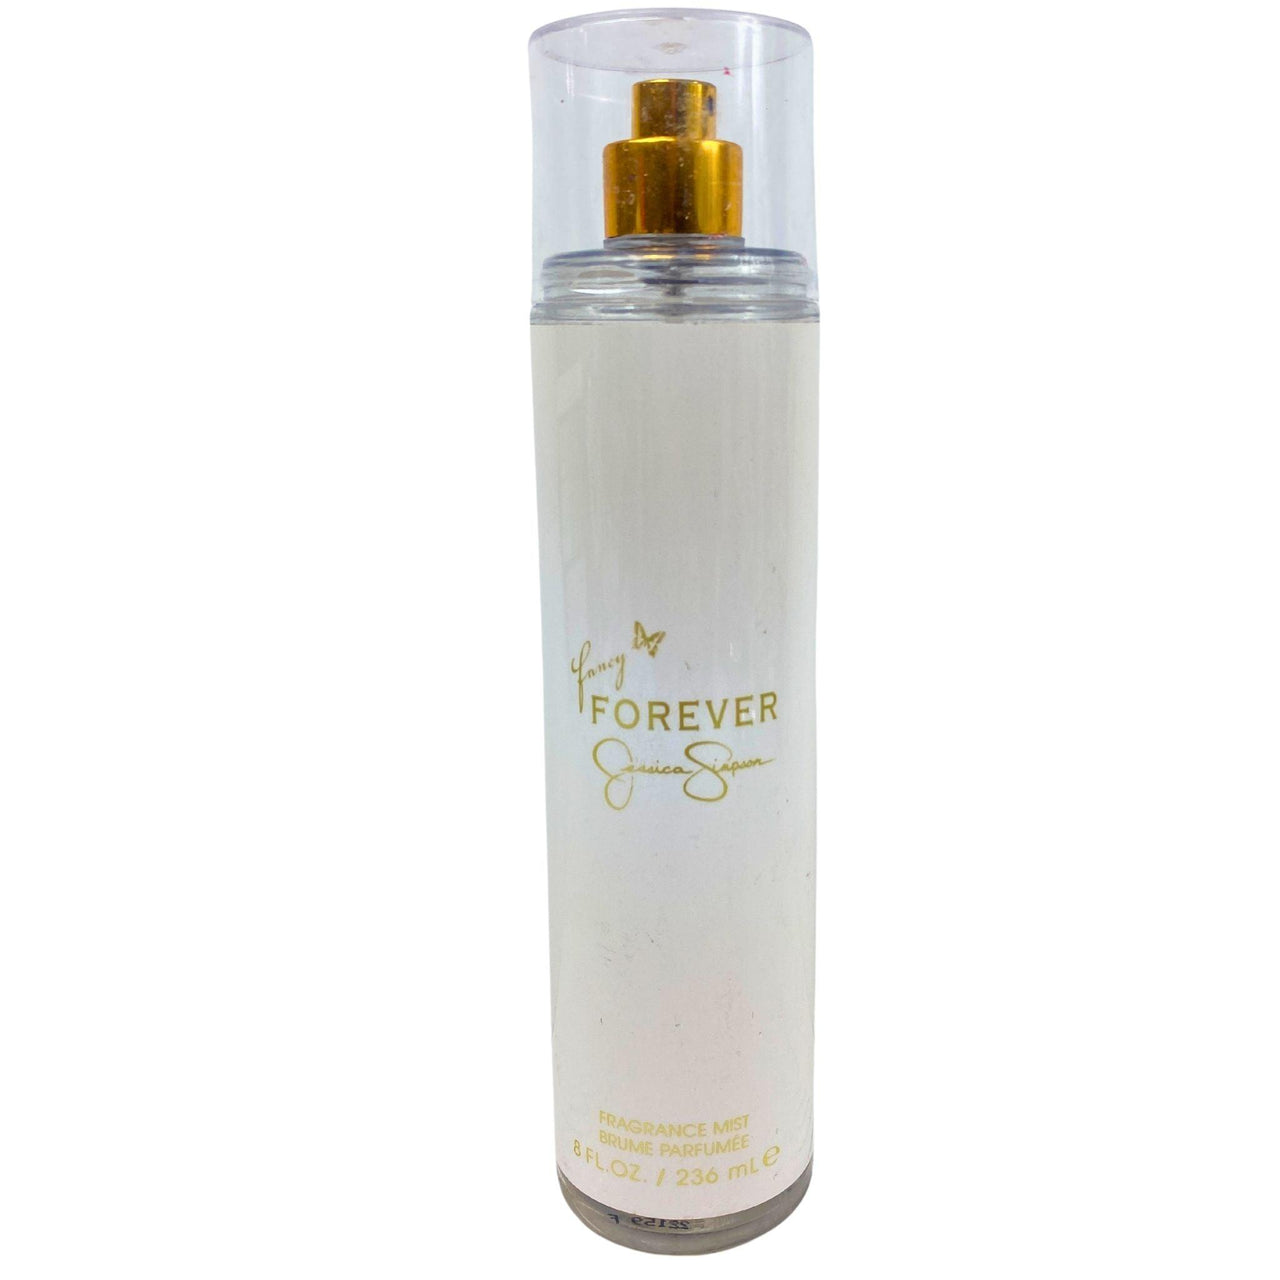 Fancy Forever Jessica Simpson Fragrance Mist 8FL.OZ (50 Pcs Lot) - Discount Wholesalers Inc